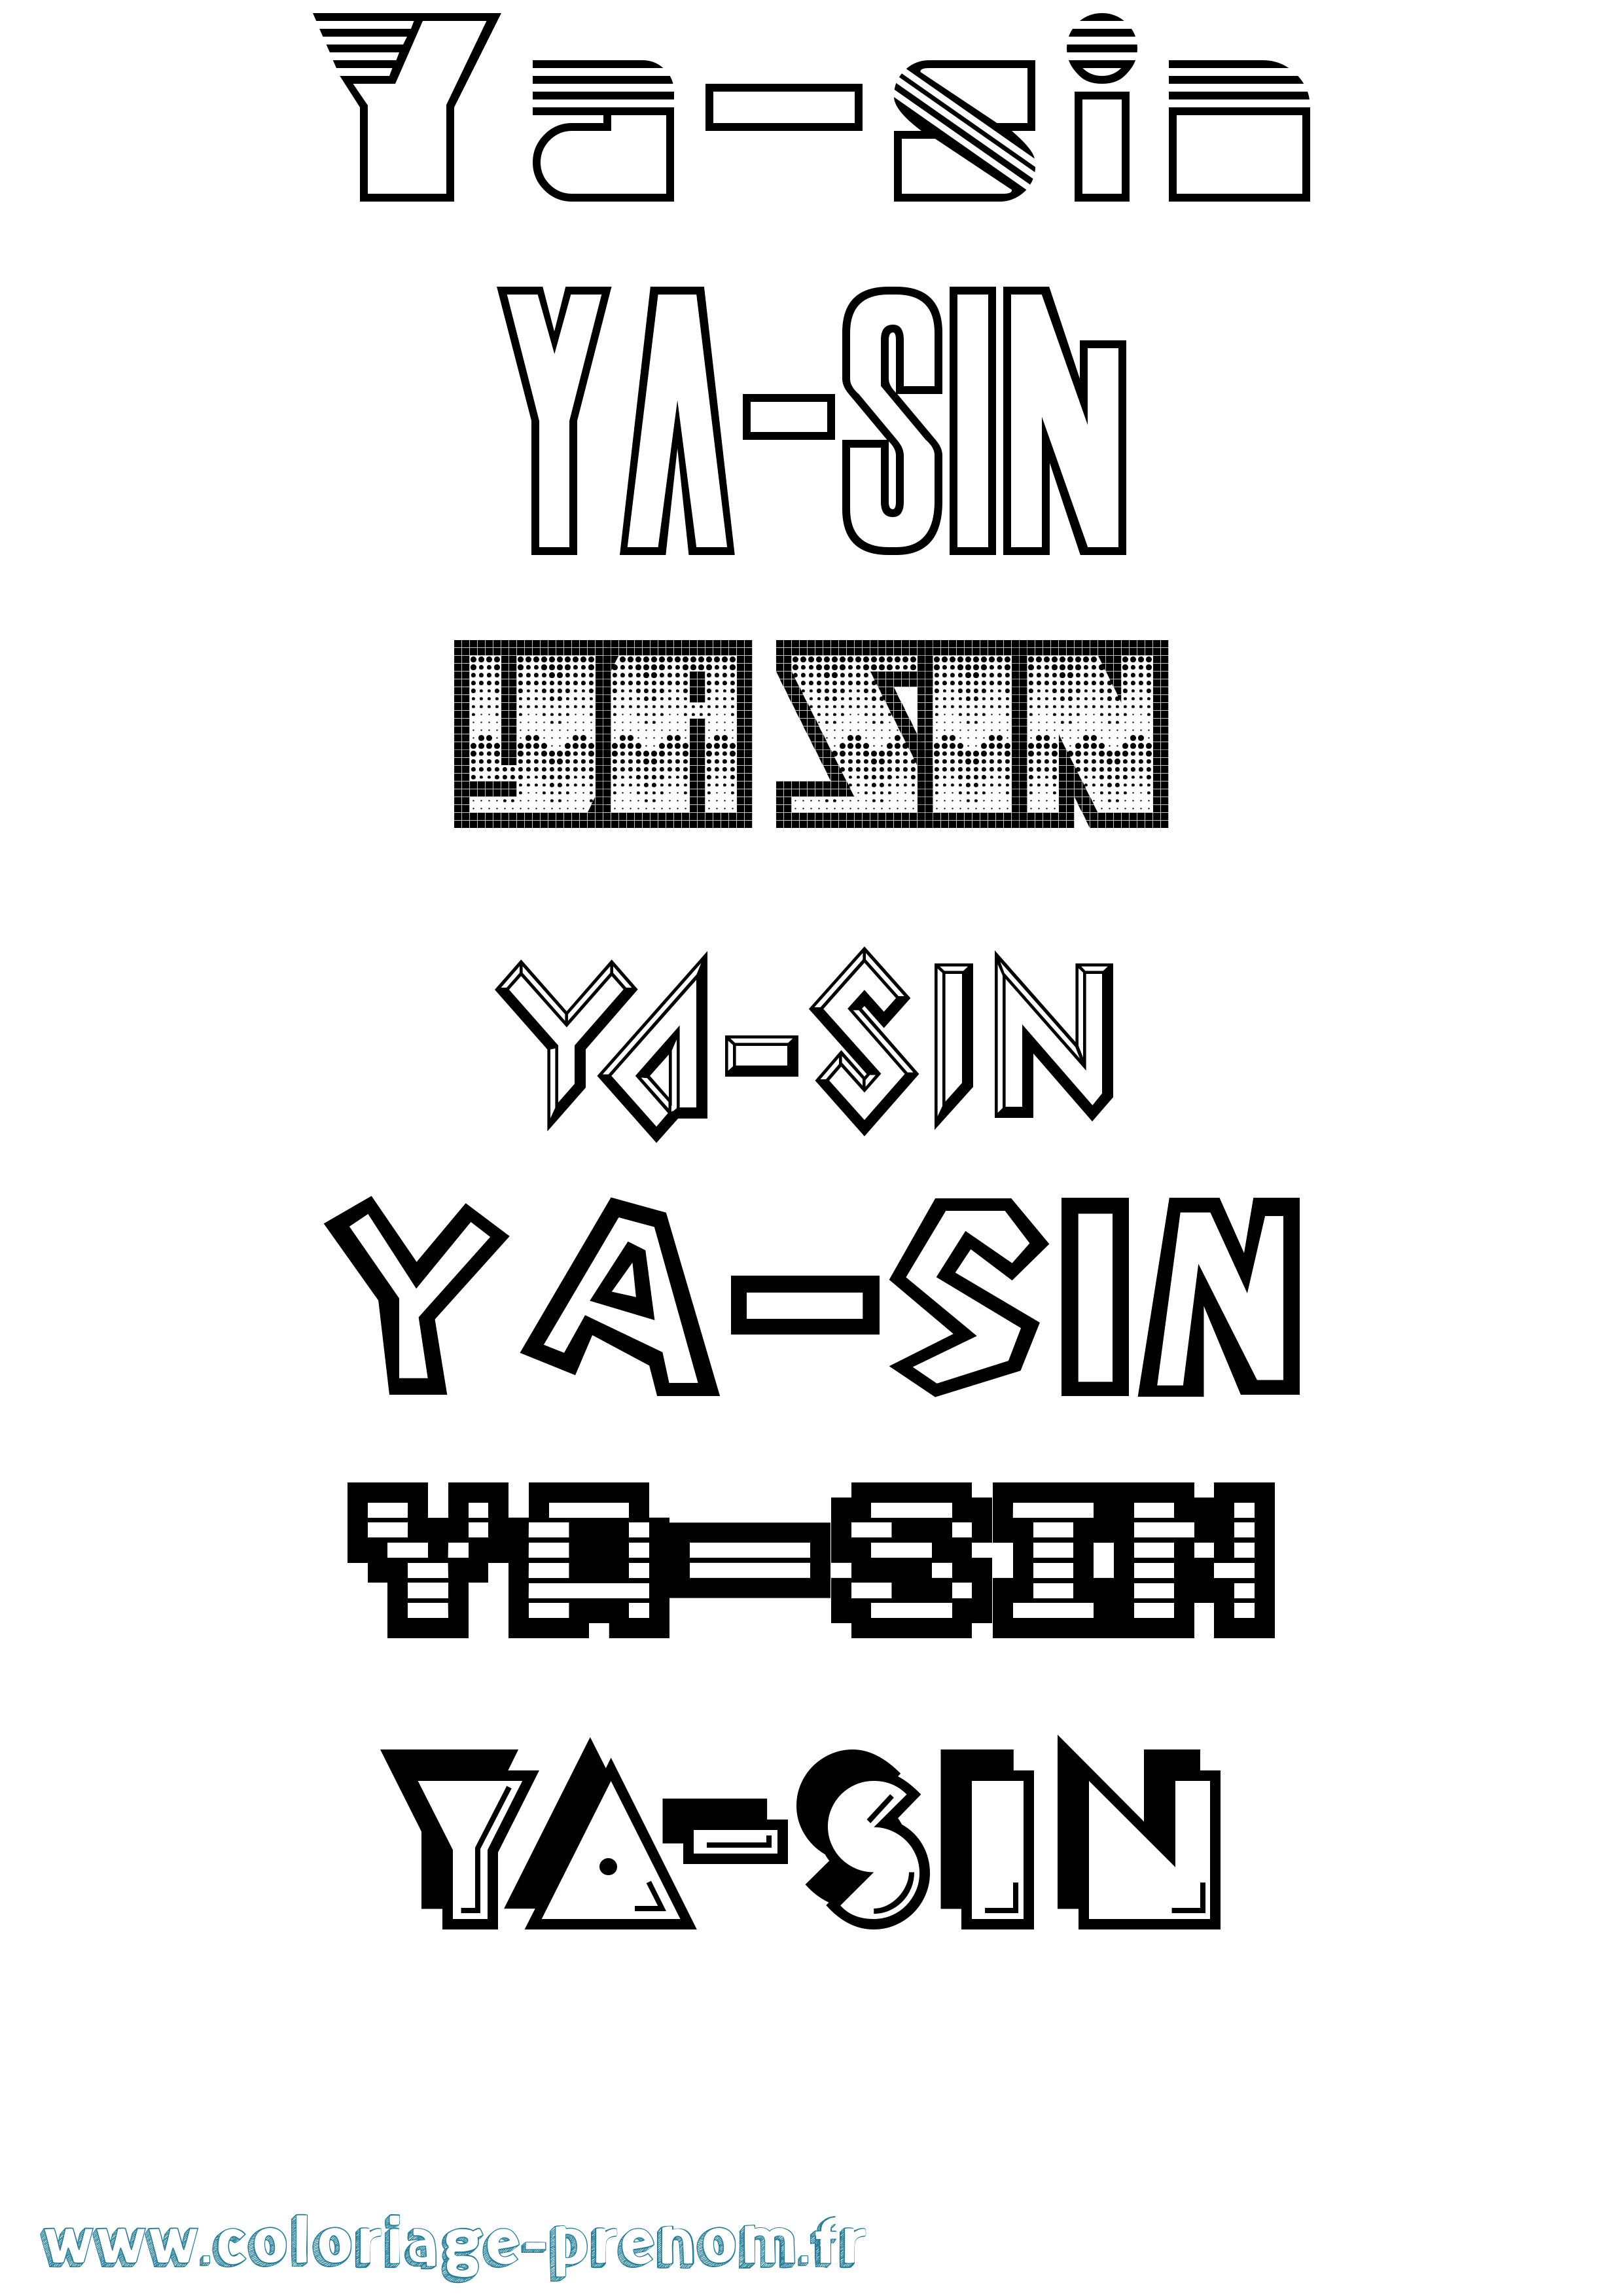 Coloriage prénom Ya-Sin Jeux Vidéos